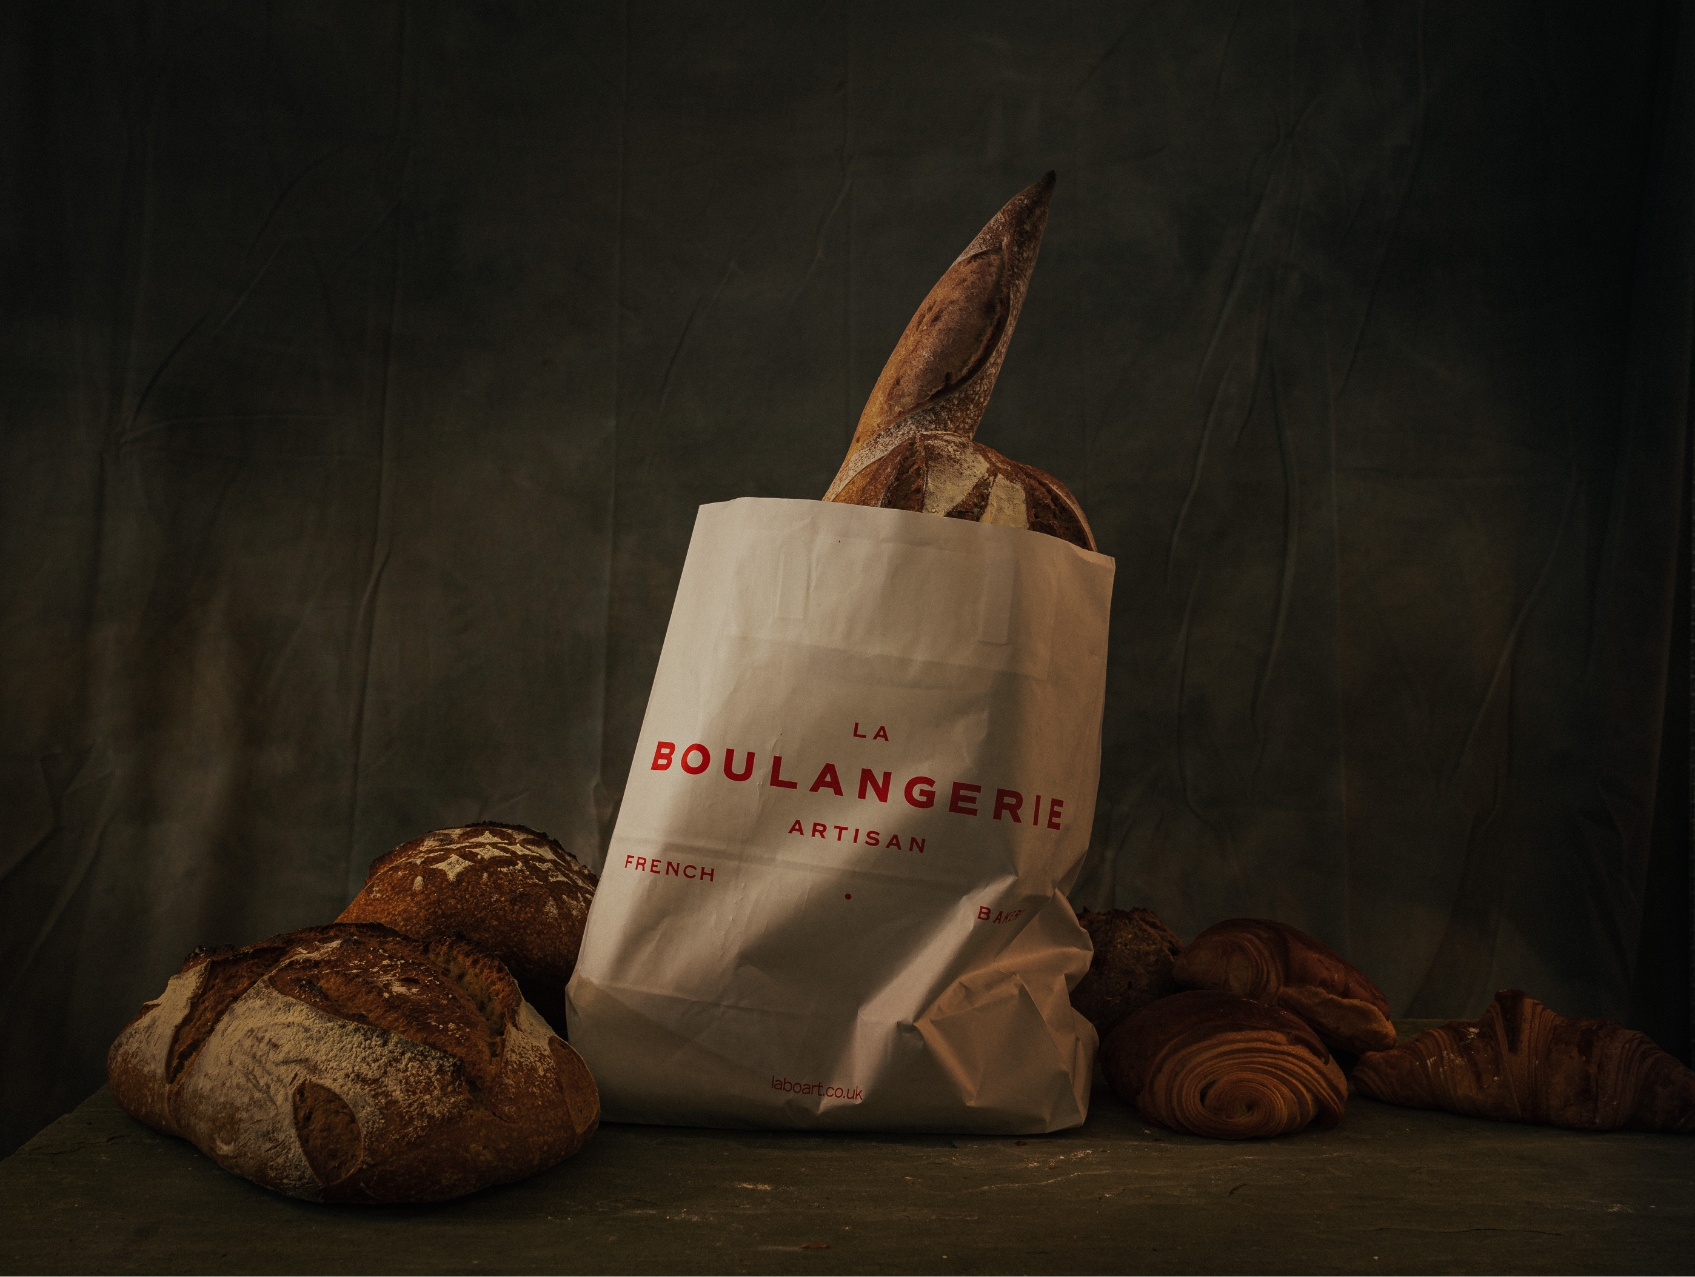 La Boulangerie bread and bag